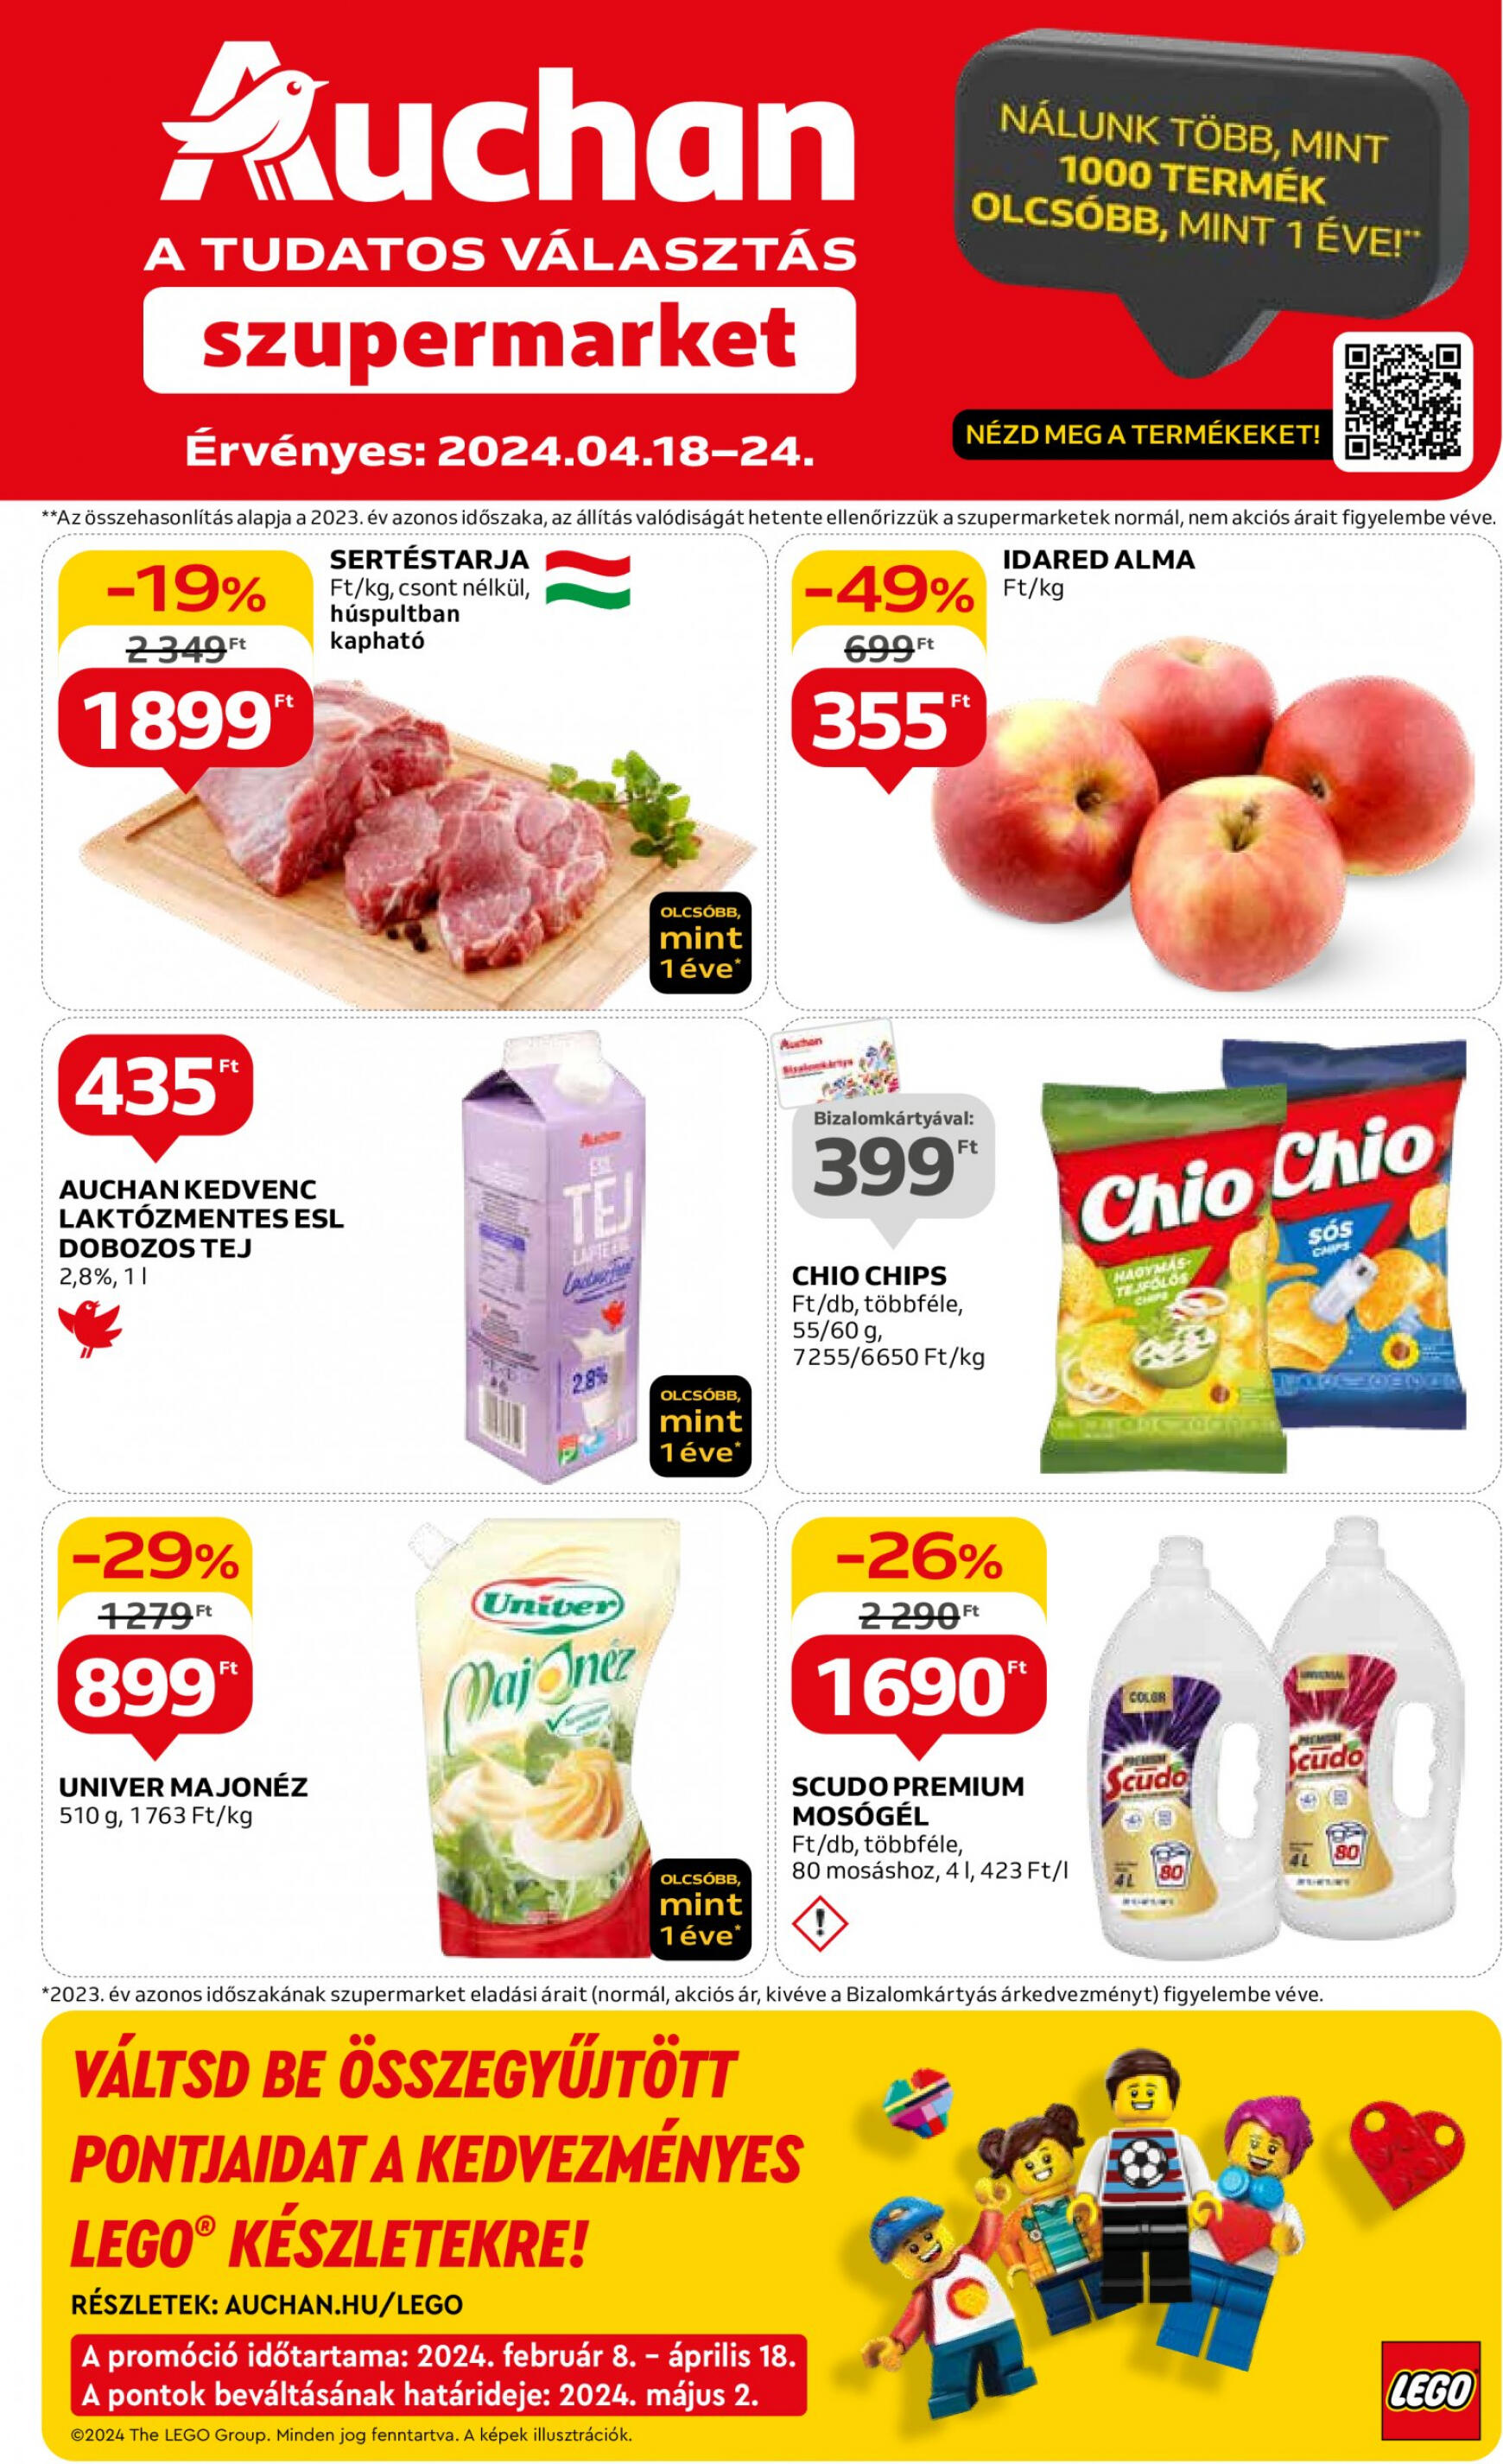 auchan - Aktuális újság Auchan szupermarket 04.18. - 04.24.